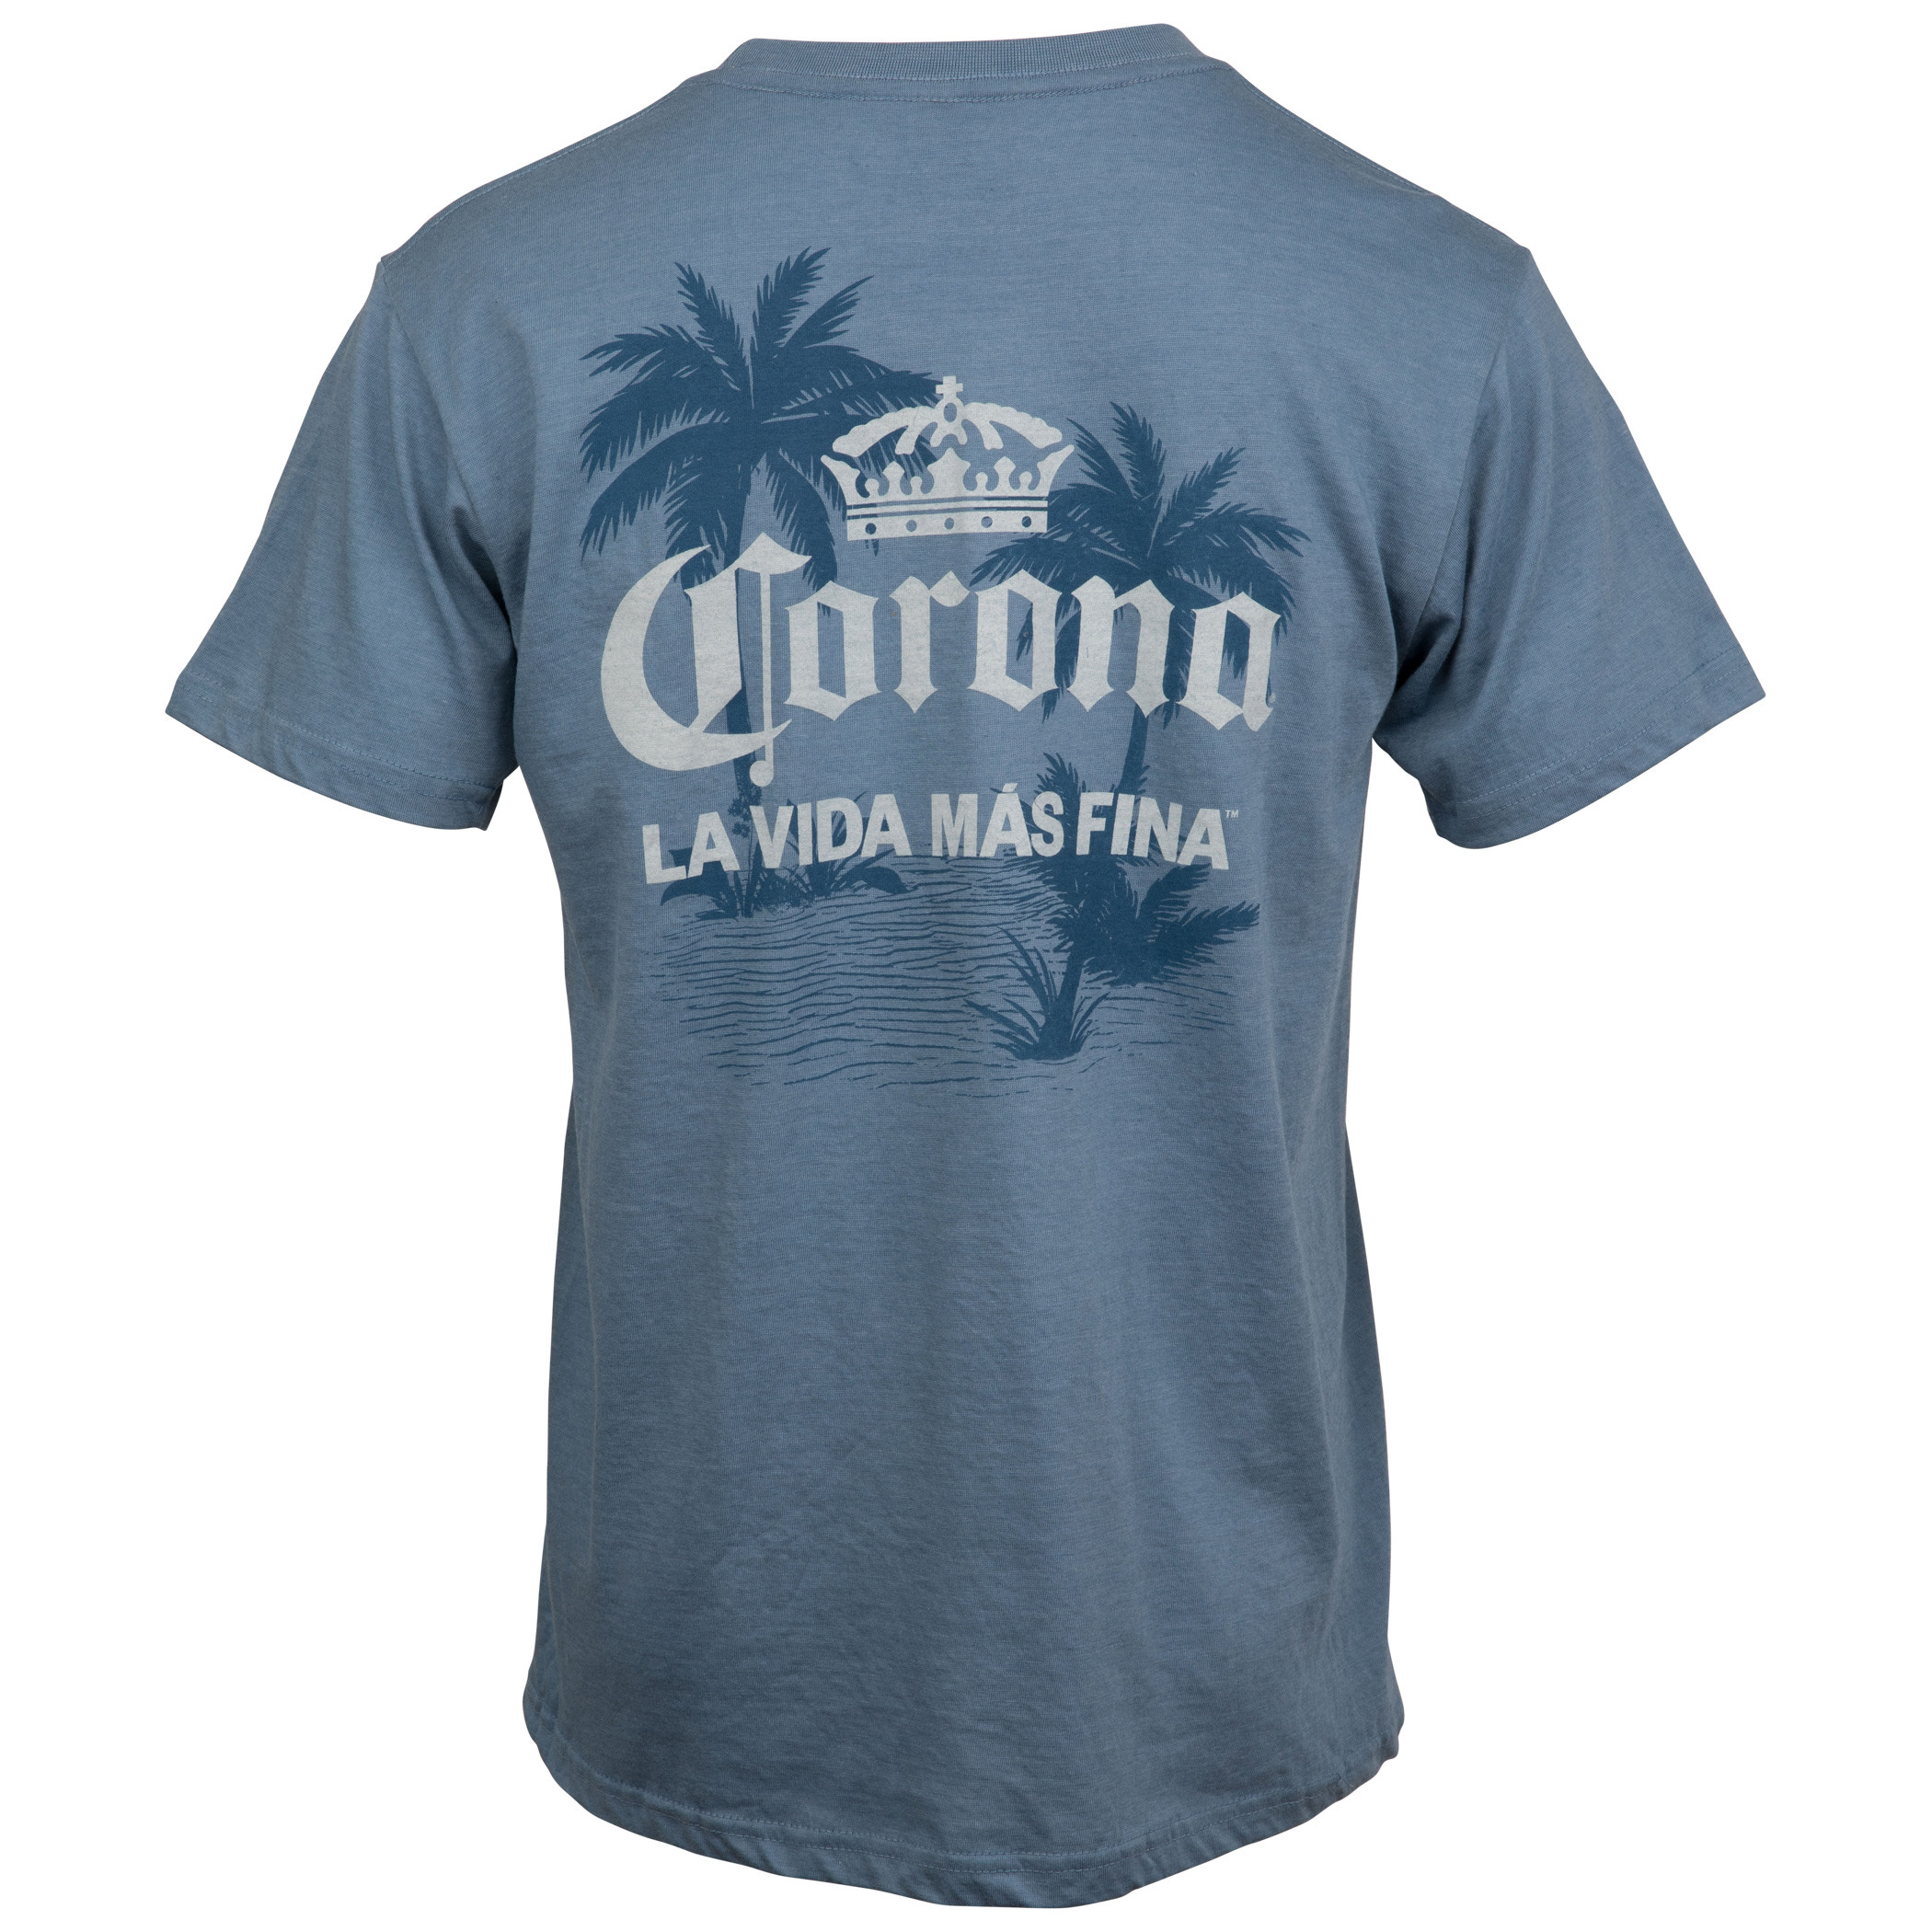 Corona Extra La Vida Mas Fina Palm Trees Front and Back Print T-Shirt